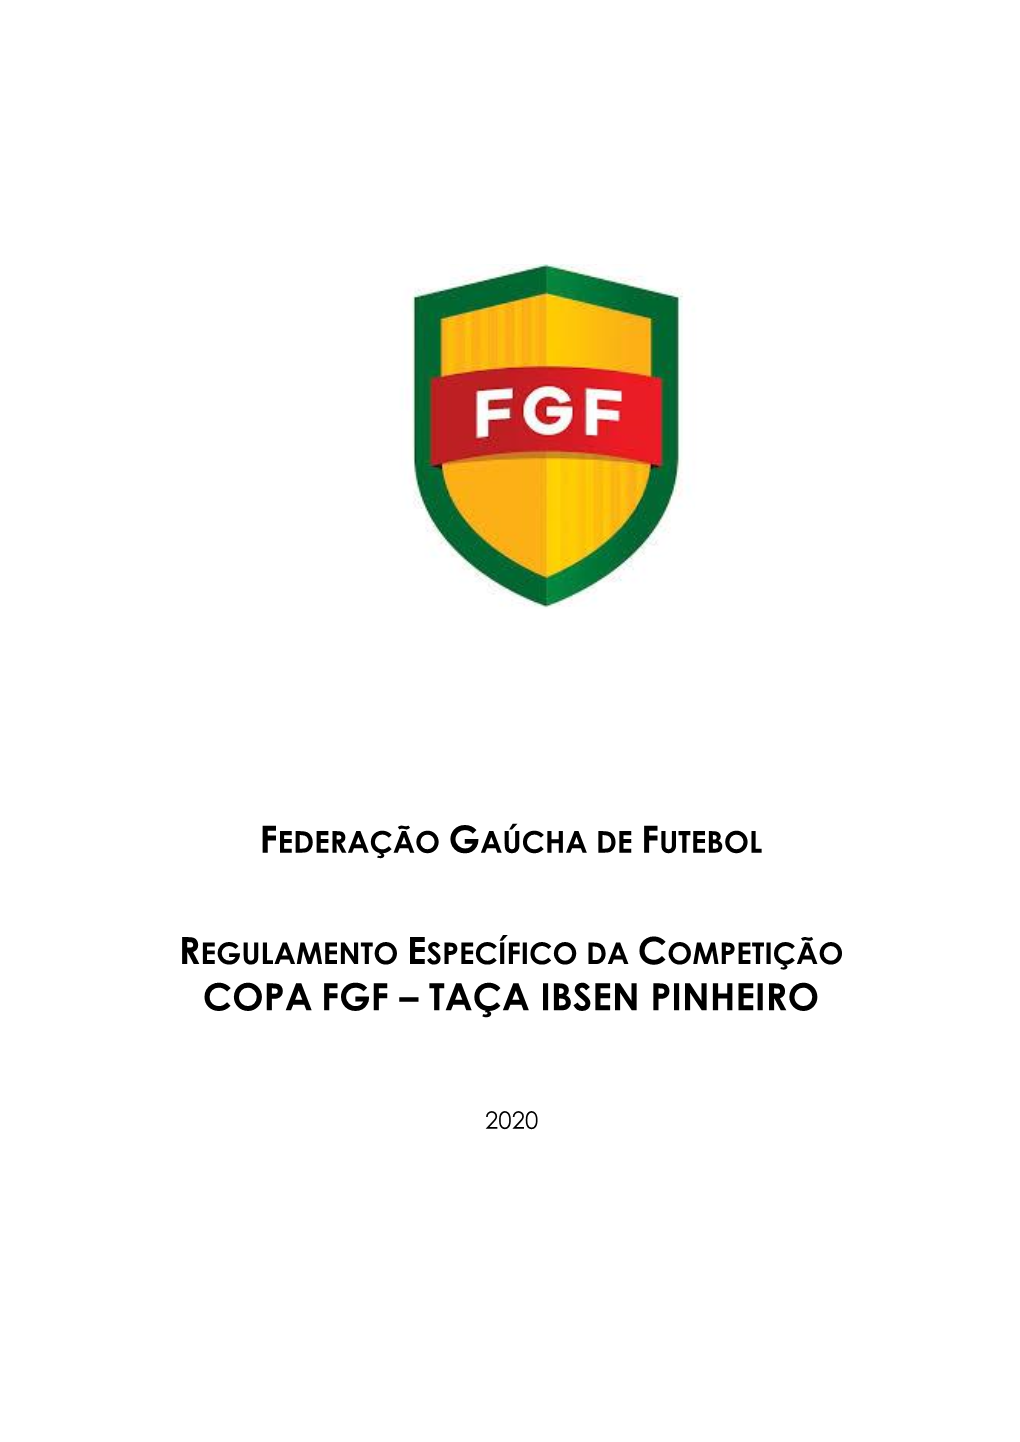 Copa Fgf – Taça Ibsen Pinheiro